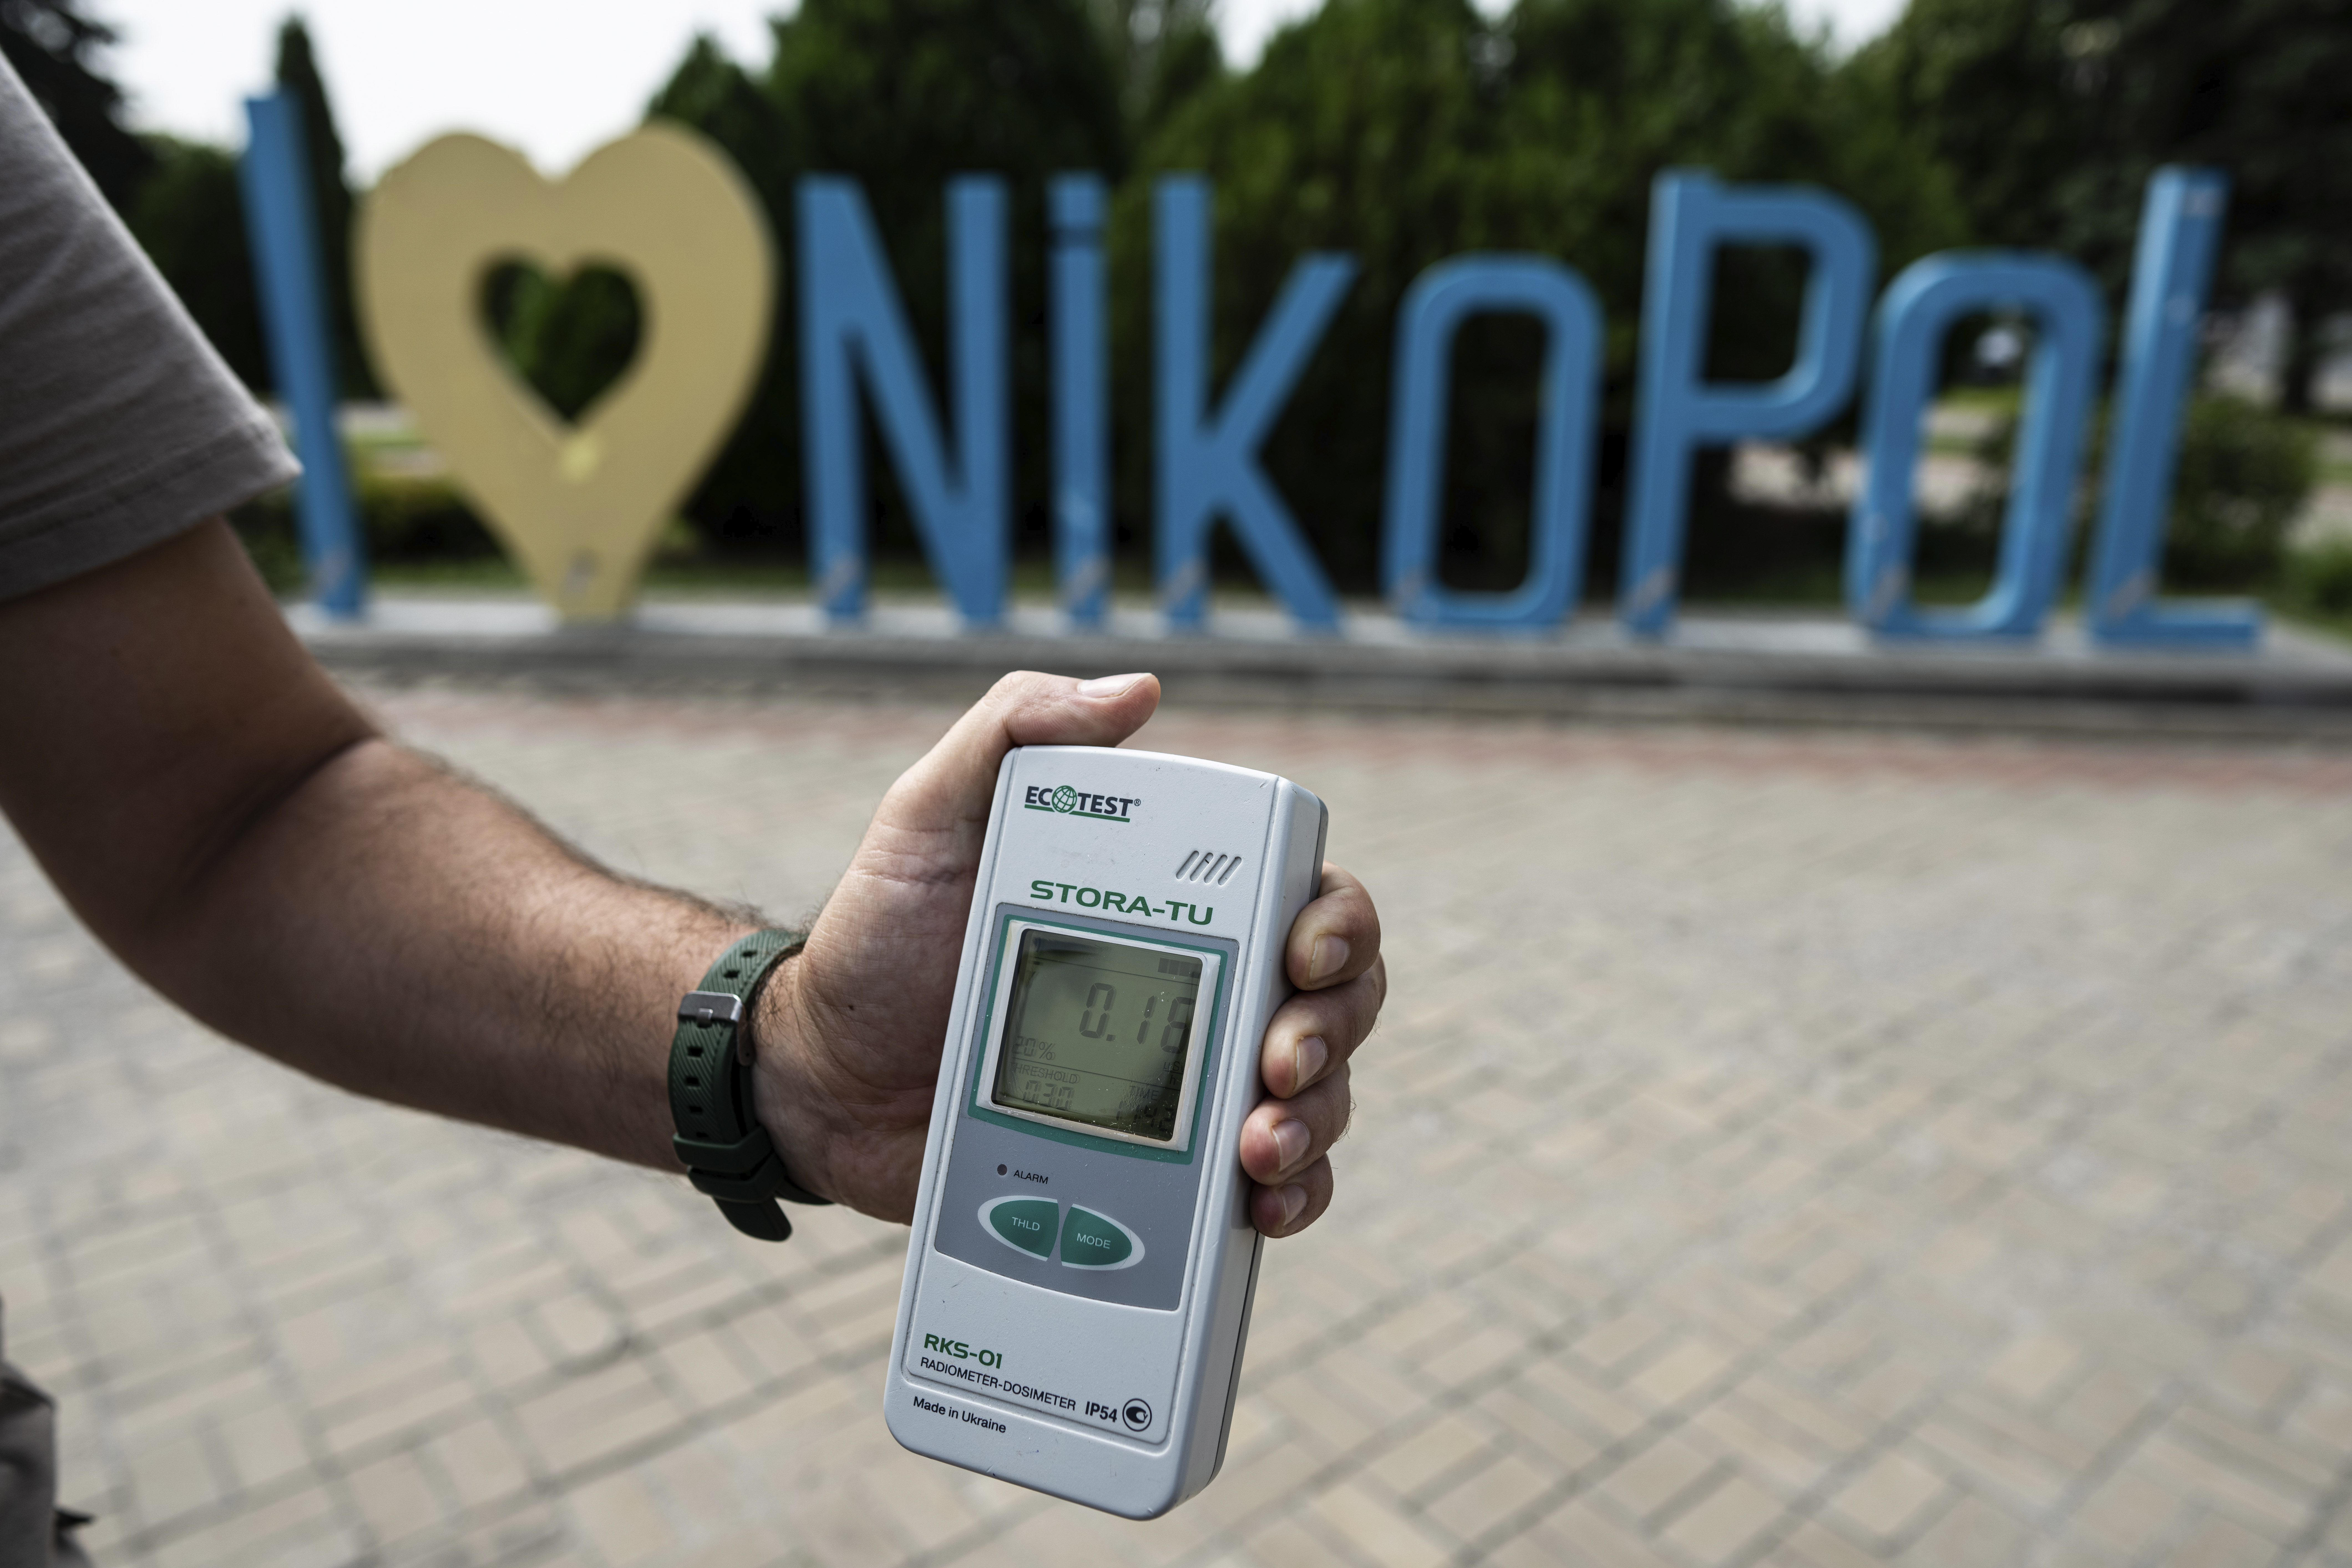 Un contador Geiger muestra un aumento del nivel de radiación en Nikopol, Ucrania, el 22 de agosto de 2022.  (Foto AP/Evgeniy Maloletka, archivo)

